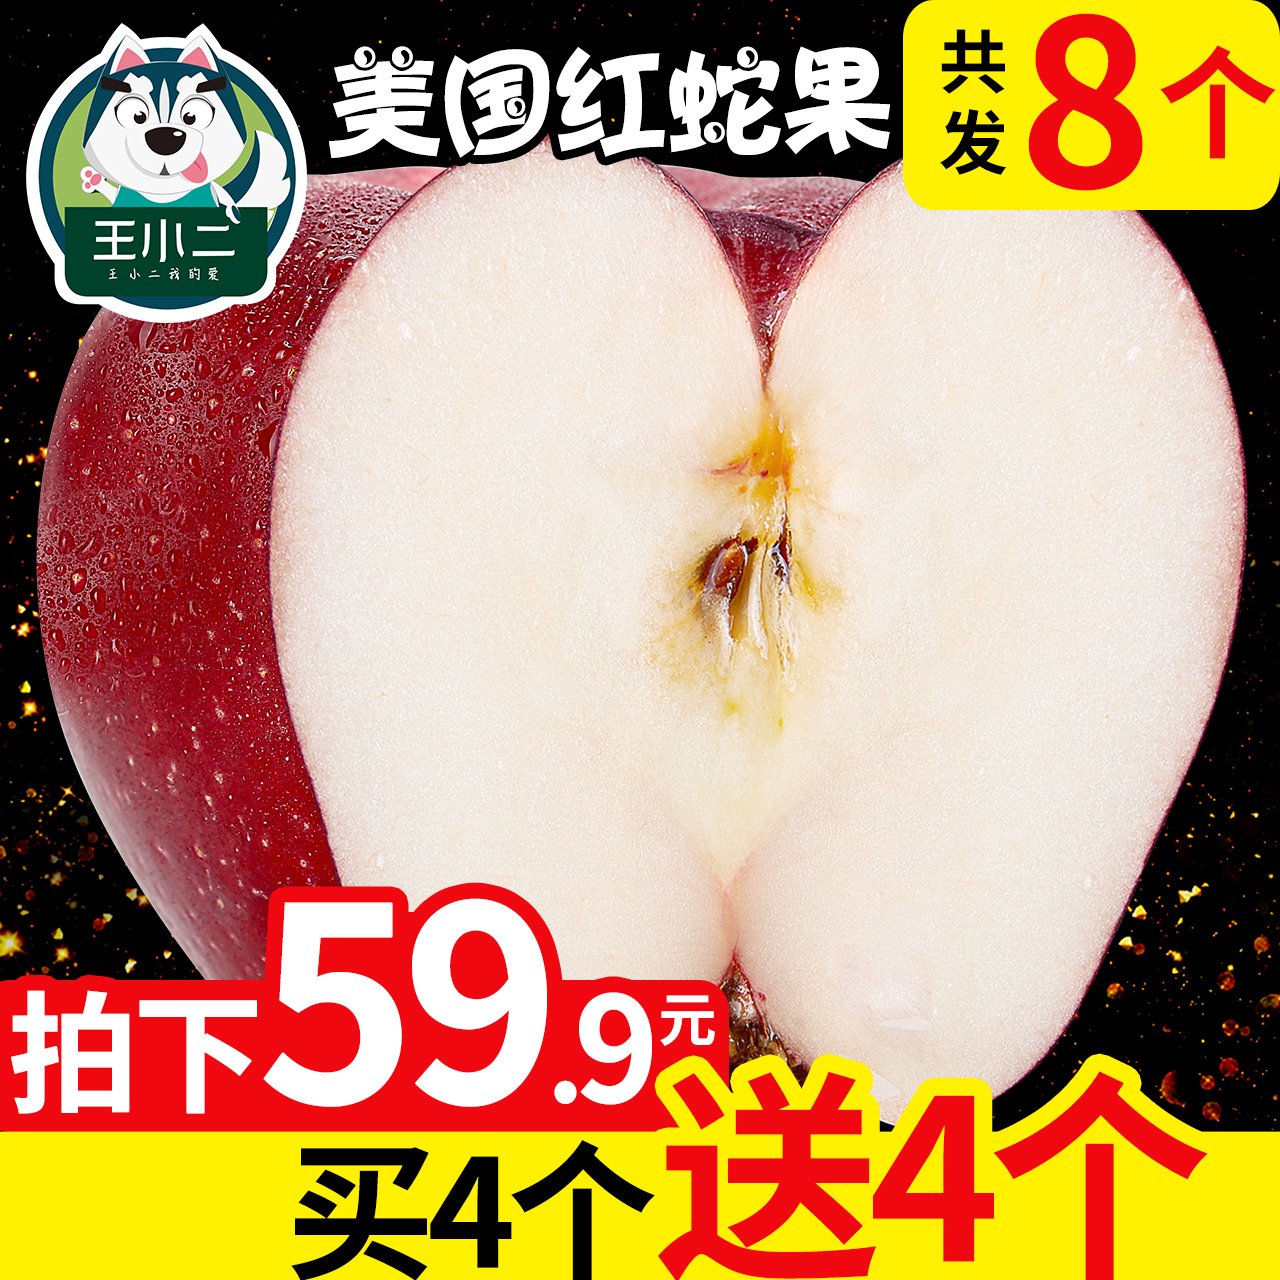 王小二 美国红蛇果苹果水果 新鲜包邮进口当季应季平果批发